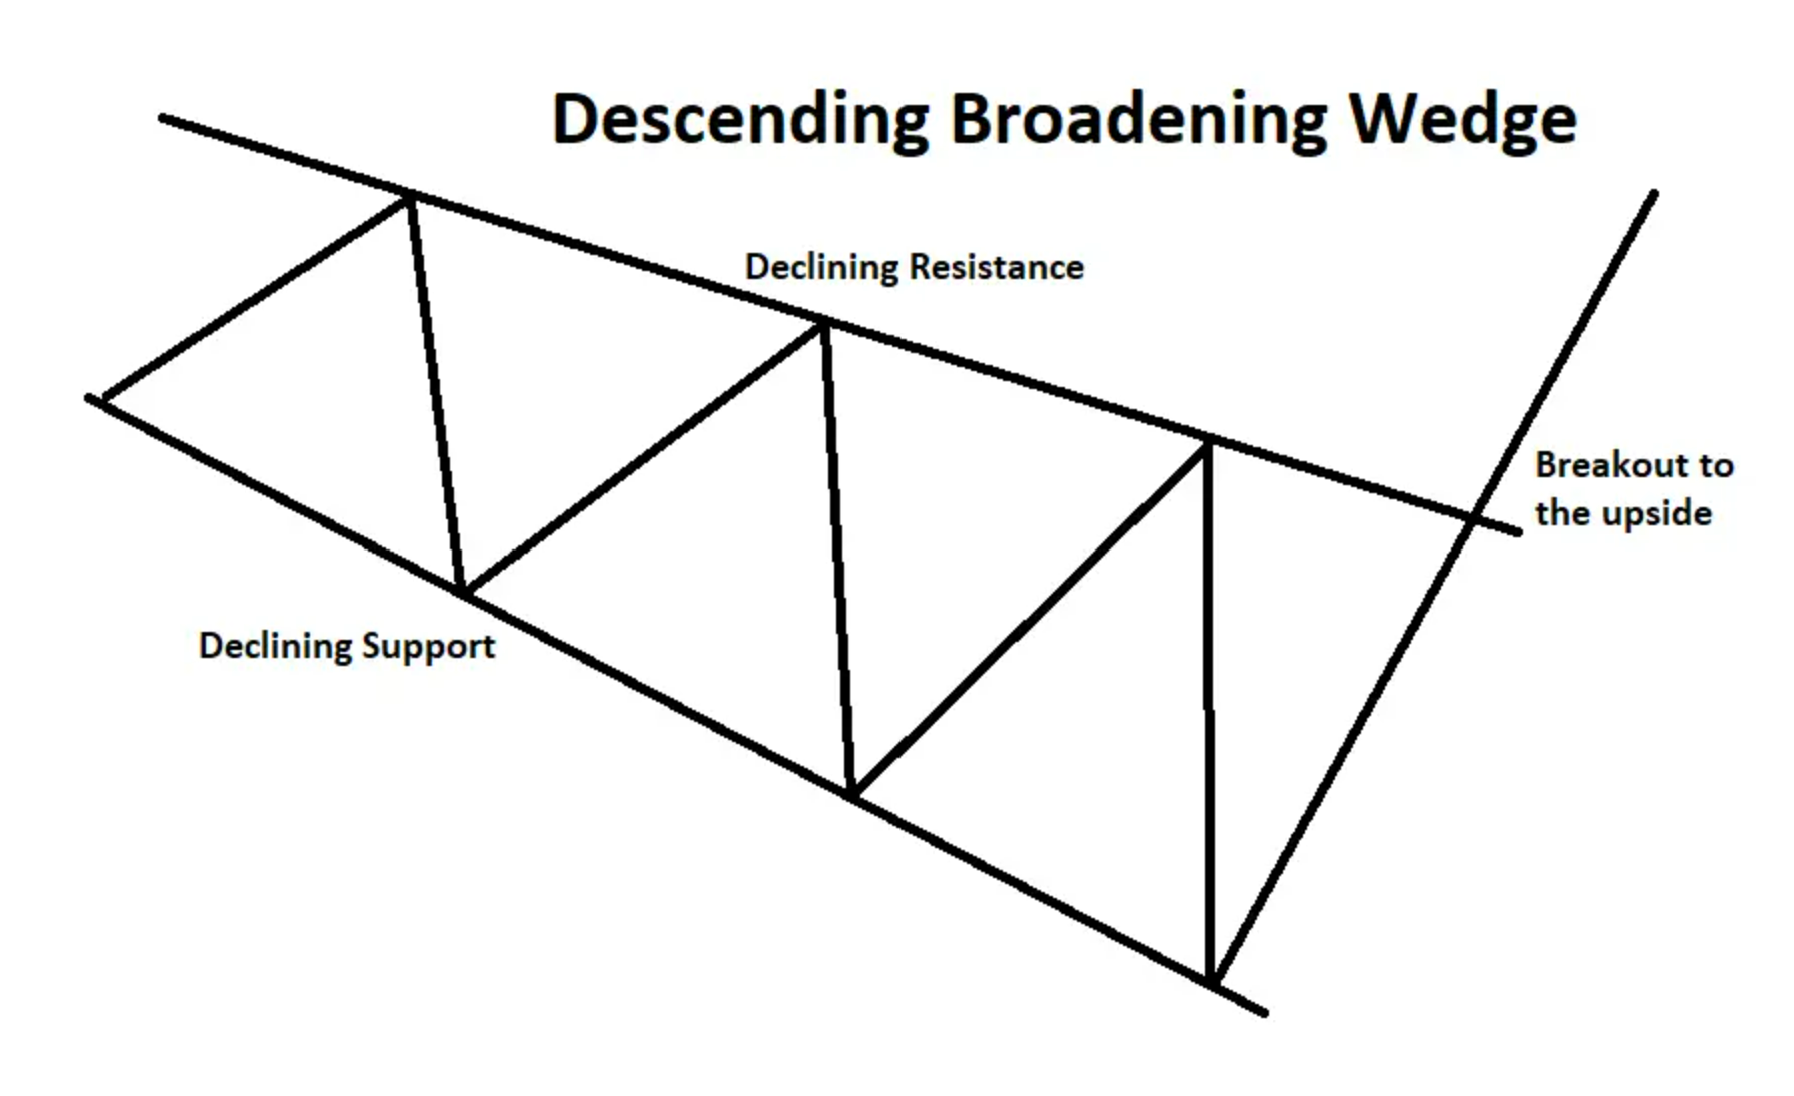 Descending Broadening Wedge